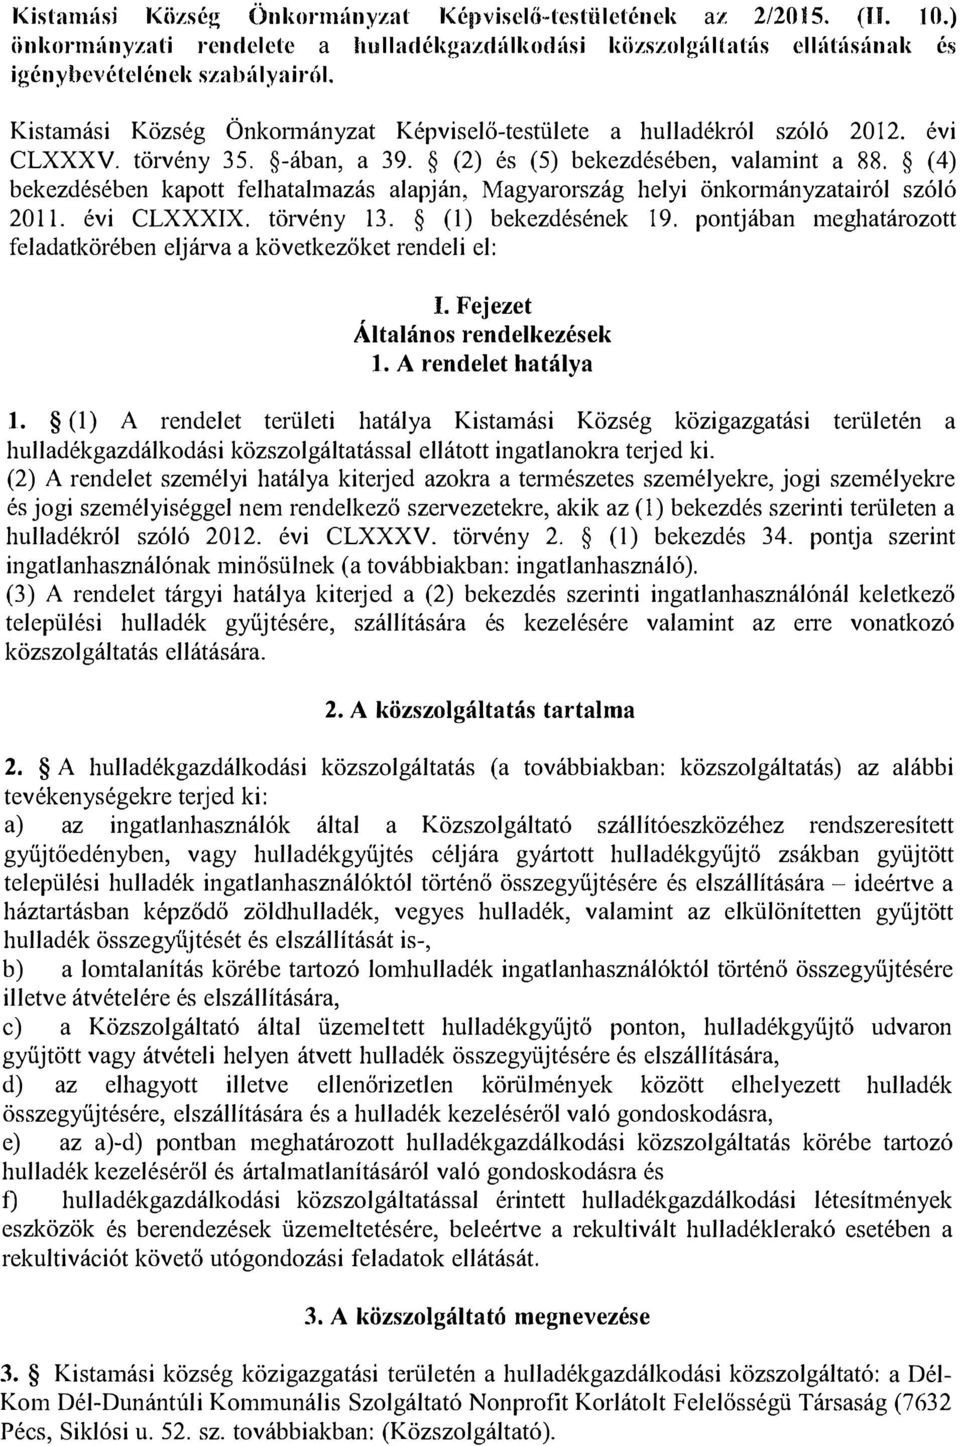 ( 4) bekezdésében kapott felhatalmazás alapján, Magyarország helyi önkormányzatairól szóló 2011. évi CLXXXIX. törvény 13. (!) bekezdésének 19.